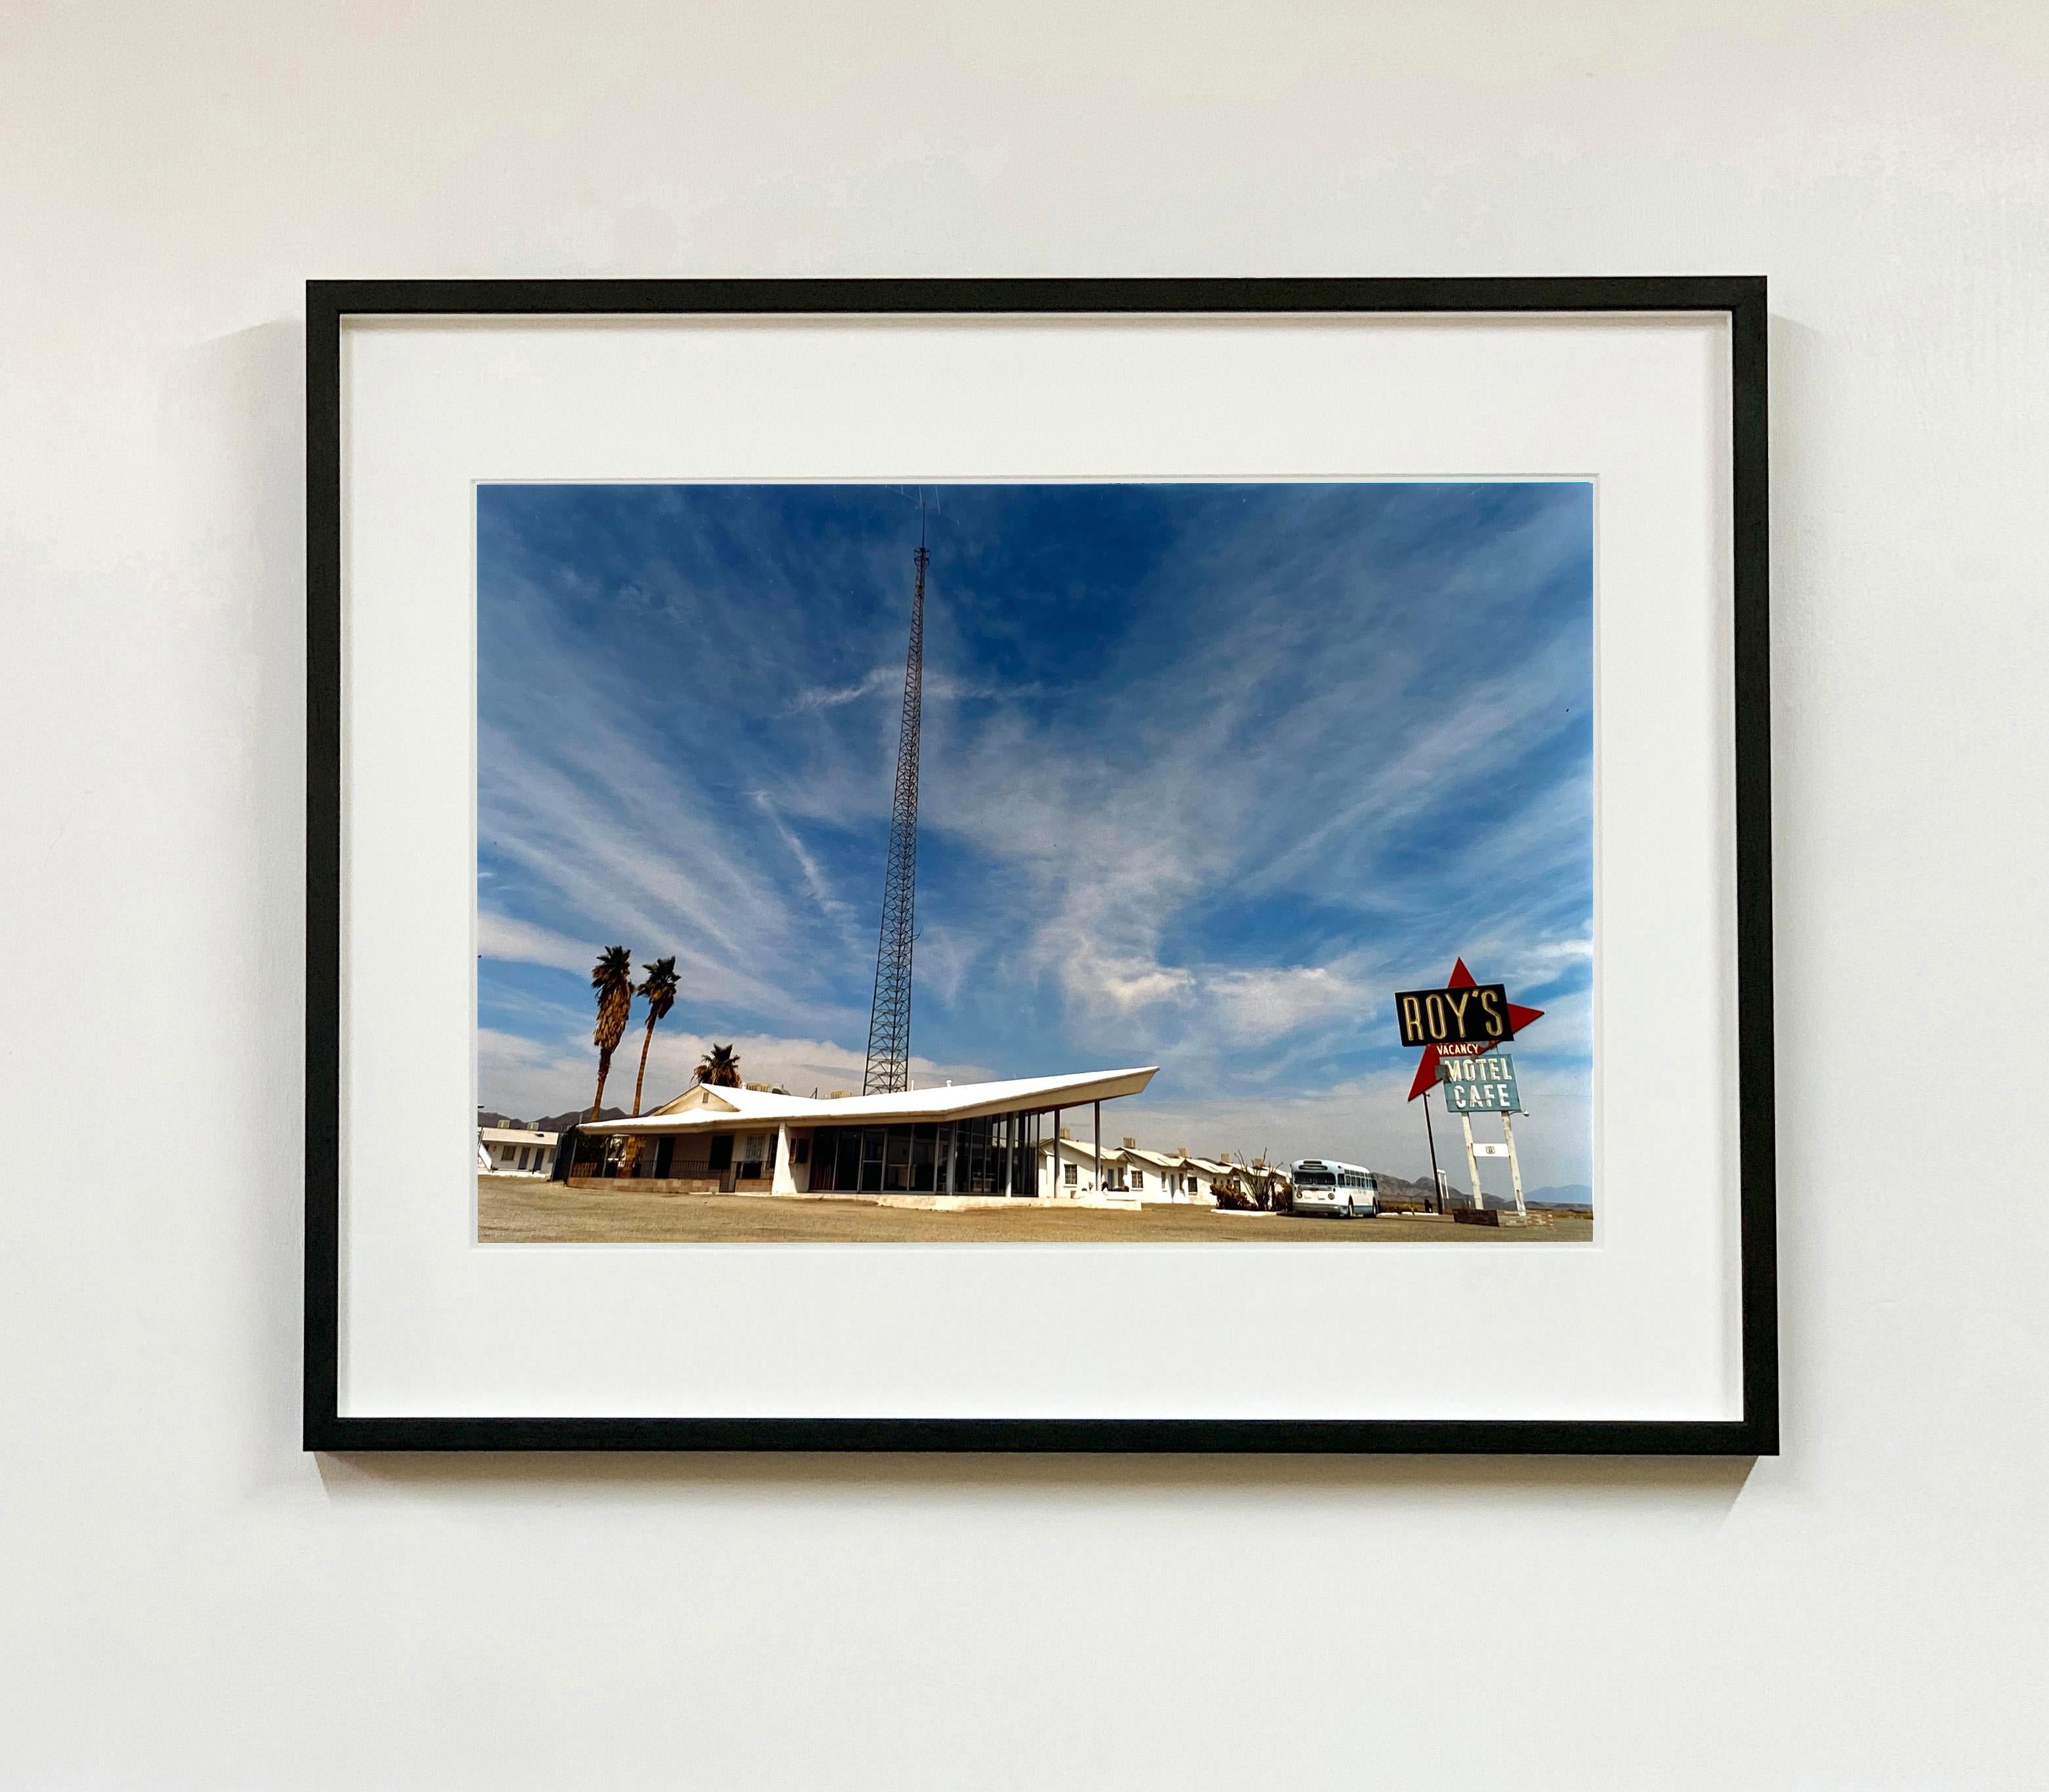 Roy's Motel Route 66, Amboy, Kalifornien – Landschafts-Farbfoto – Print von Richard Heeps